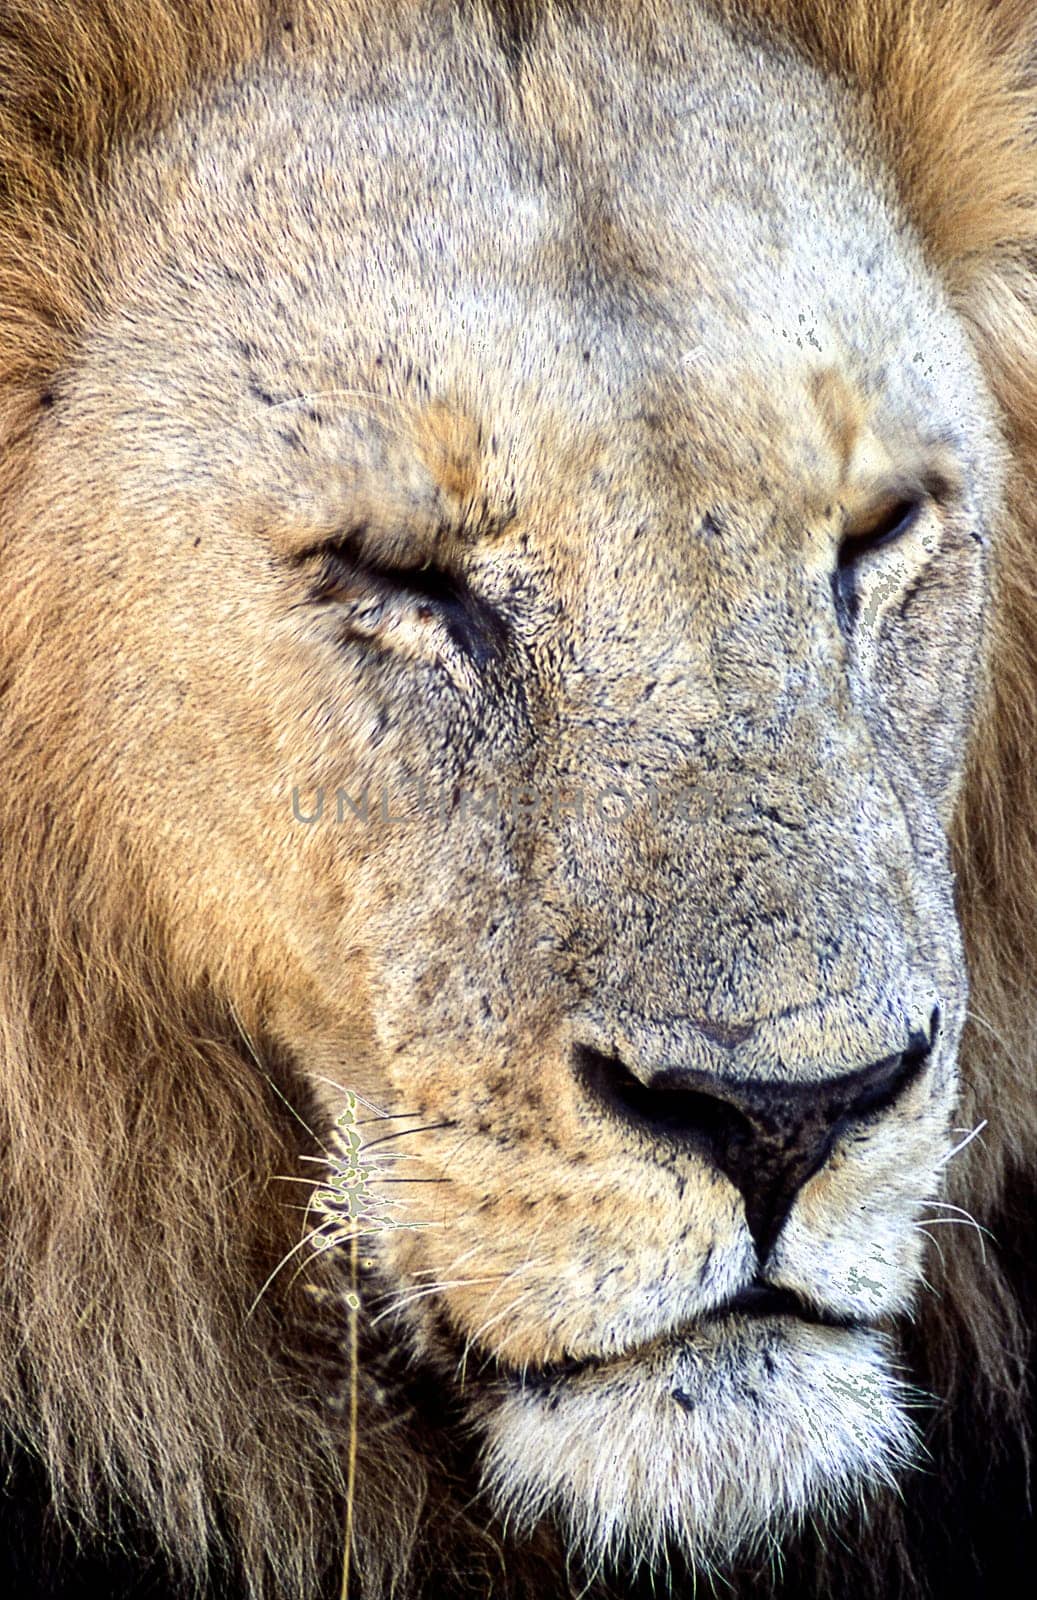 Lion (Panthera leo), Moremi Wildlife Reserve, Ngamiland, Botswana, Africa